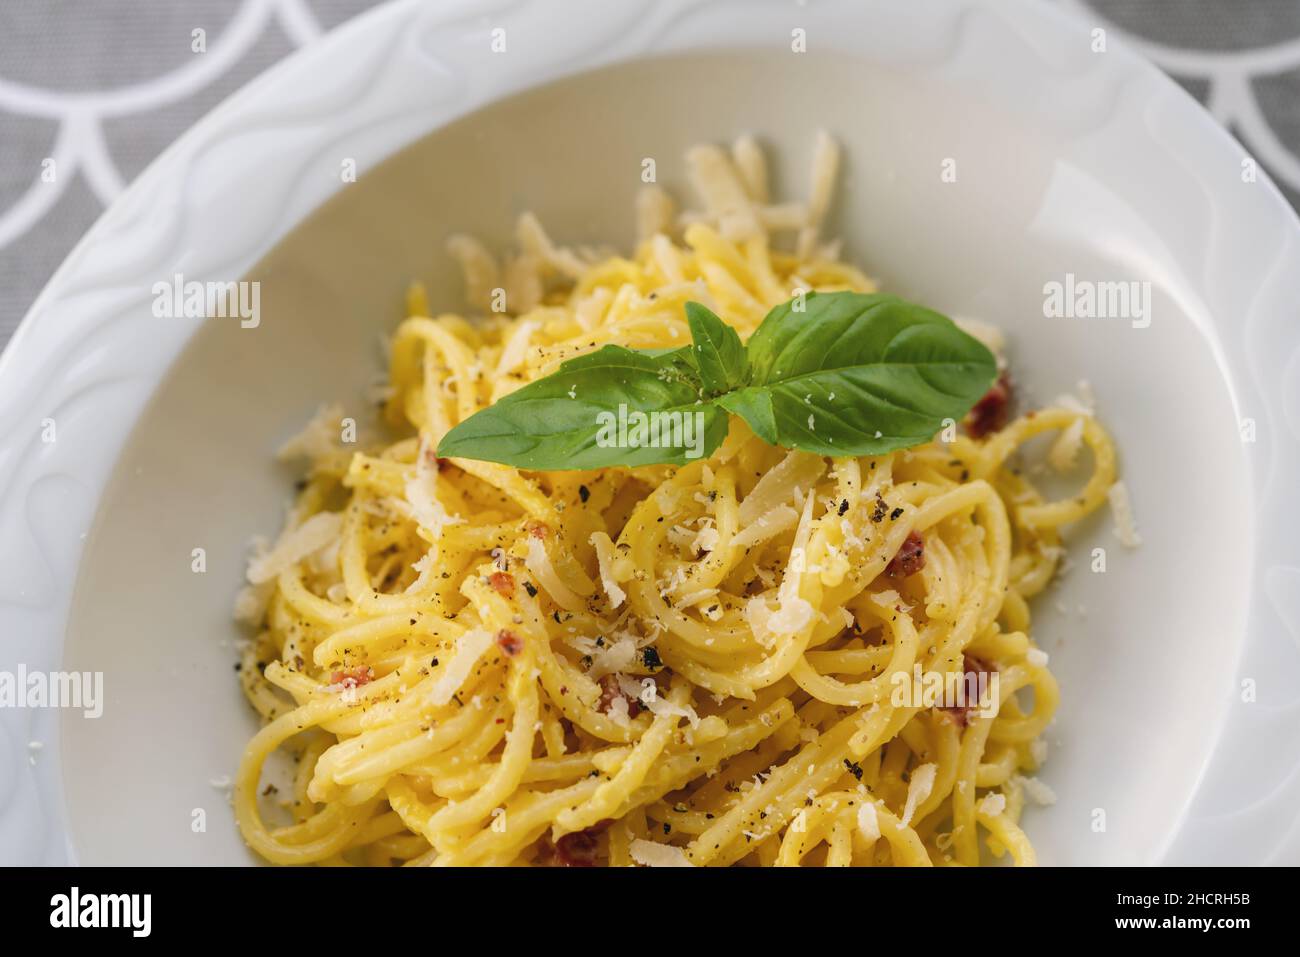 Les pâtes Carbonara, spaghetti à la pancetta, l'oeuf dur, le parmesan et la crème. La cuisine traditionnelle italienne. Pasta alla carbonara Banque D'Images